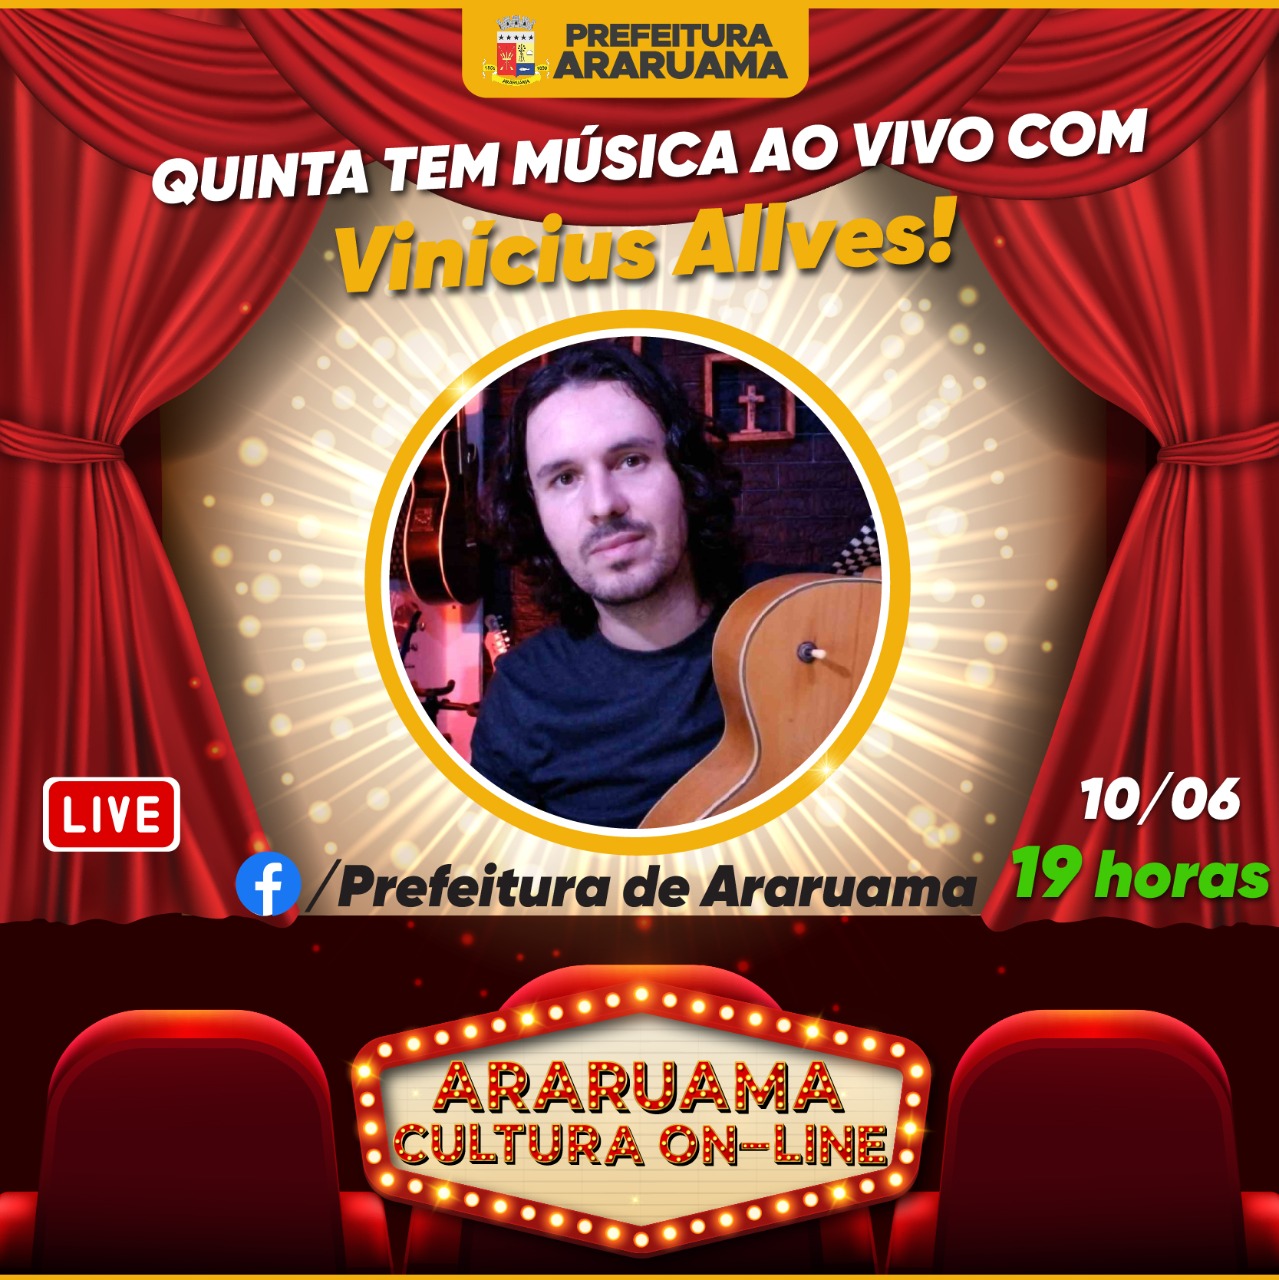 Vinícius Allves é atração confirmada no “Araruama Cultura On-line” dessa quinta-feira